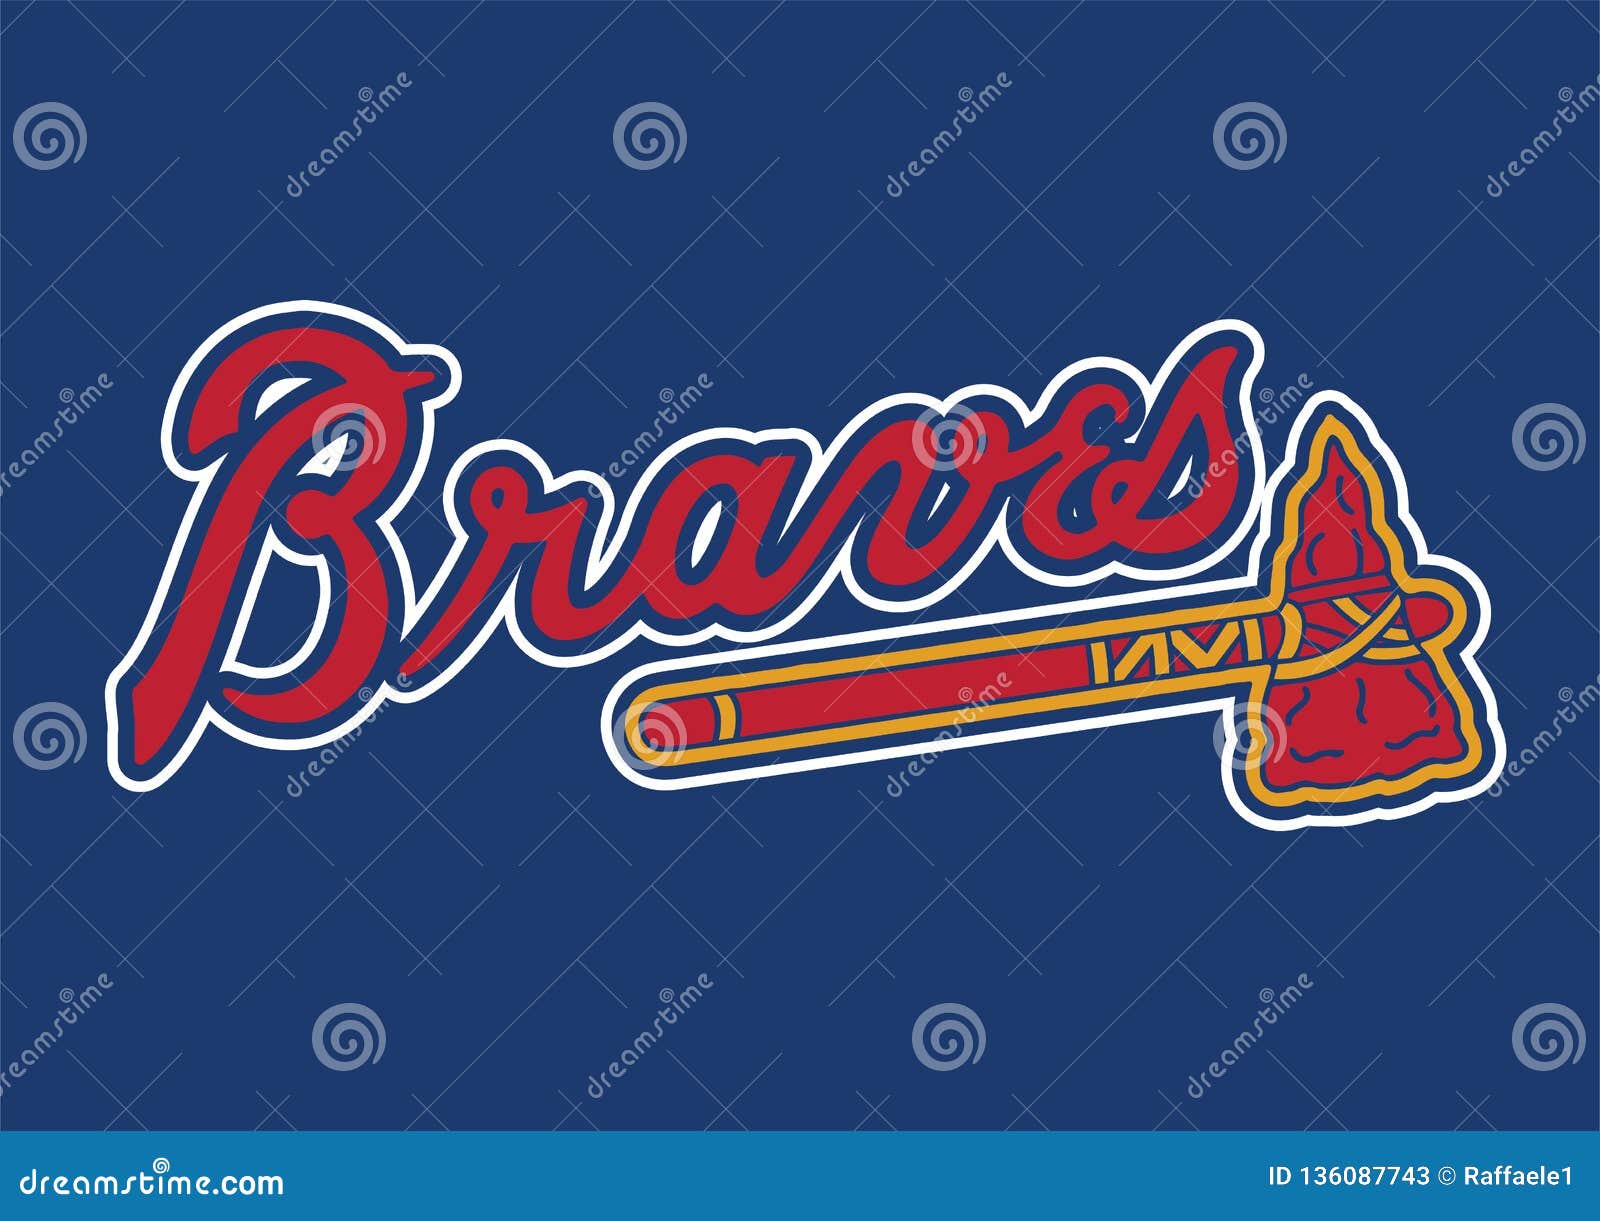 Atlanta Braves Stock Illustrations – 32 Atlanta Braves Stock